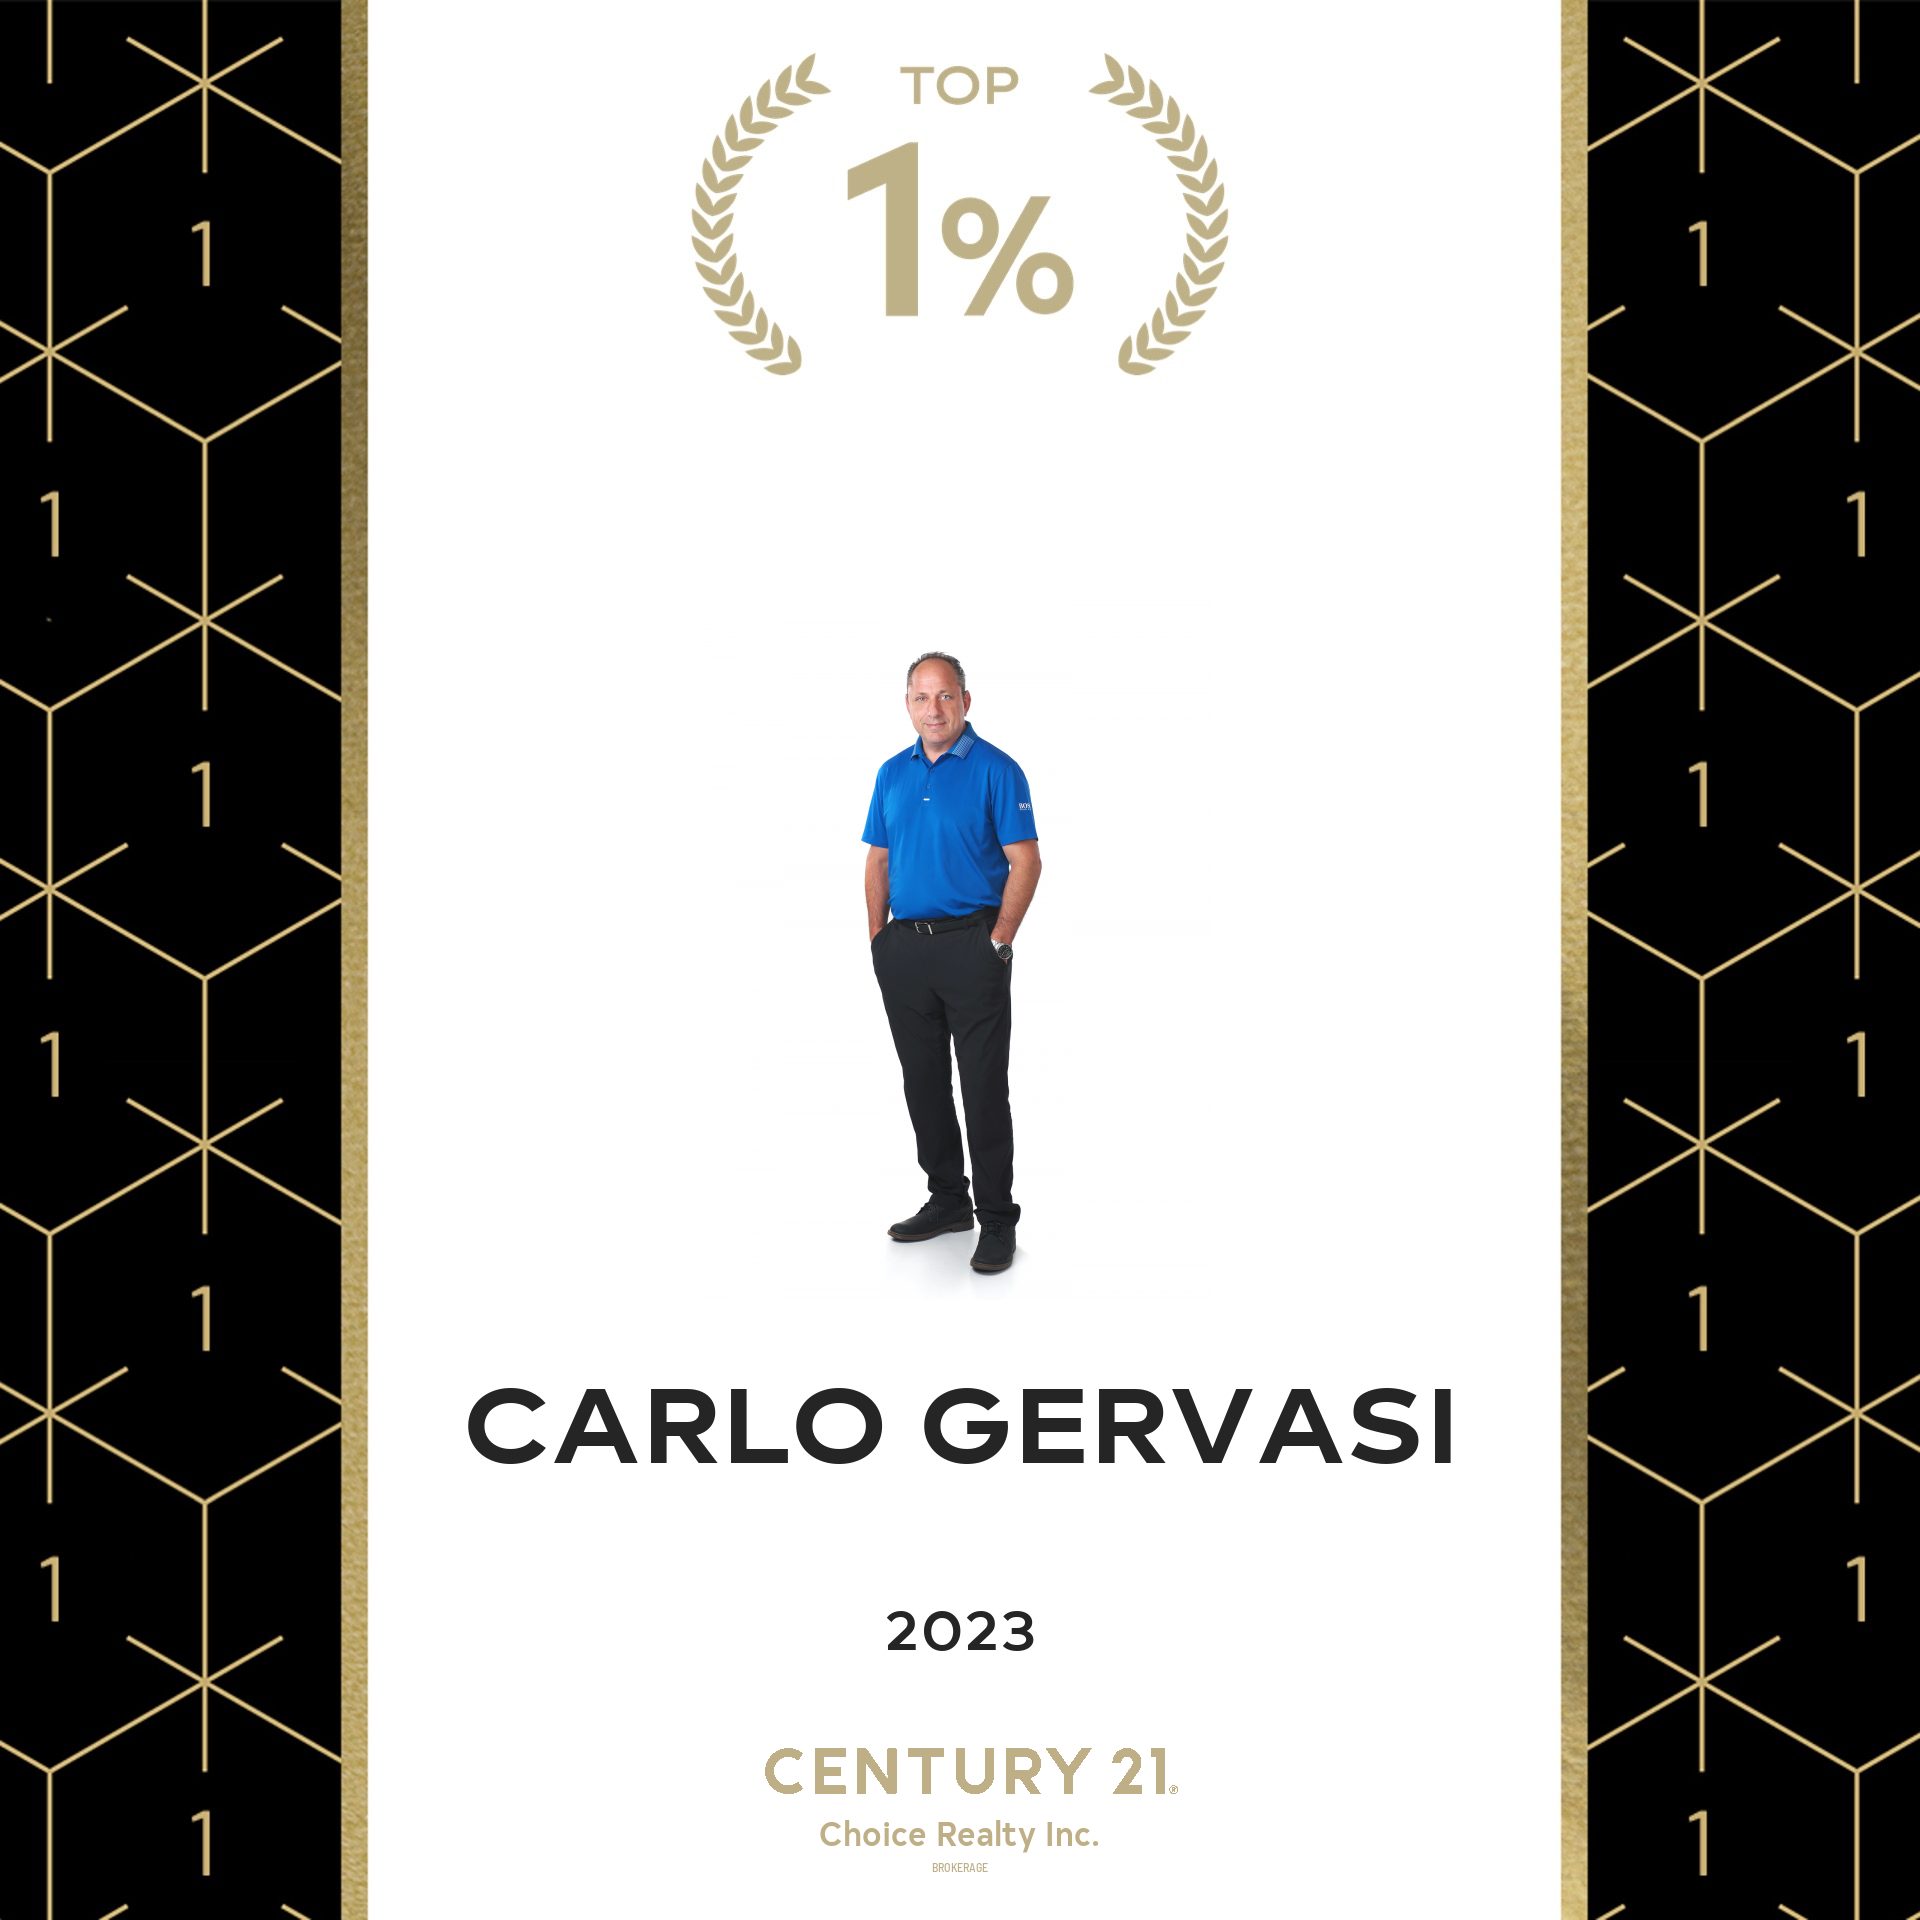 Carlo Gervasi - Top 1%Century21 Realtor in All of Canada 2023